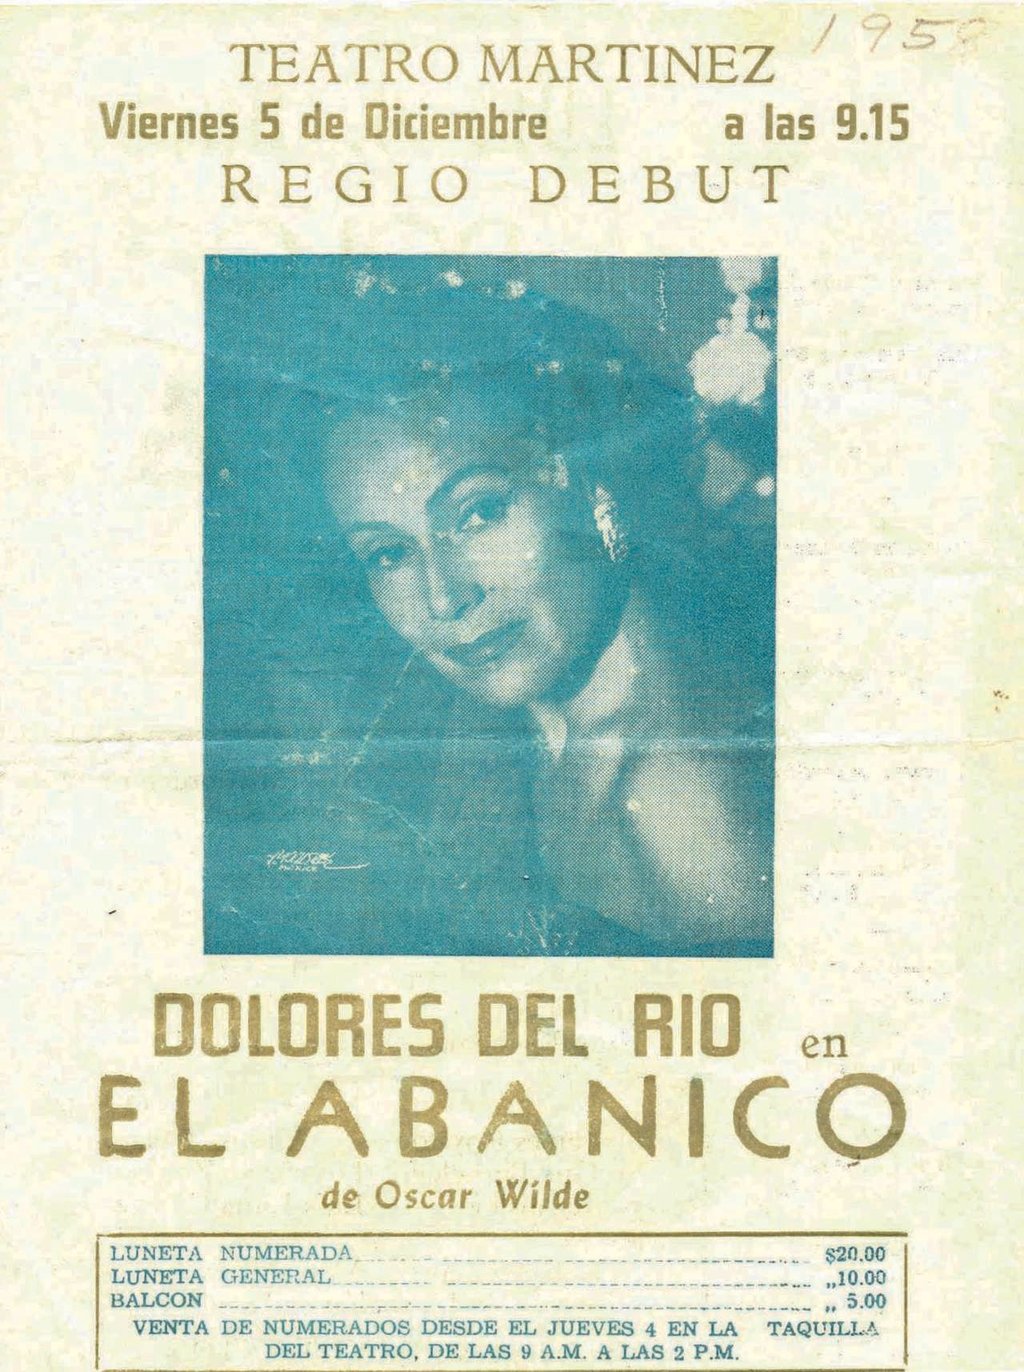 Dolores del Río en Nazas